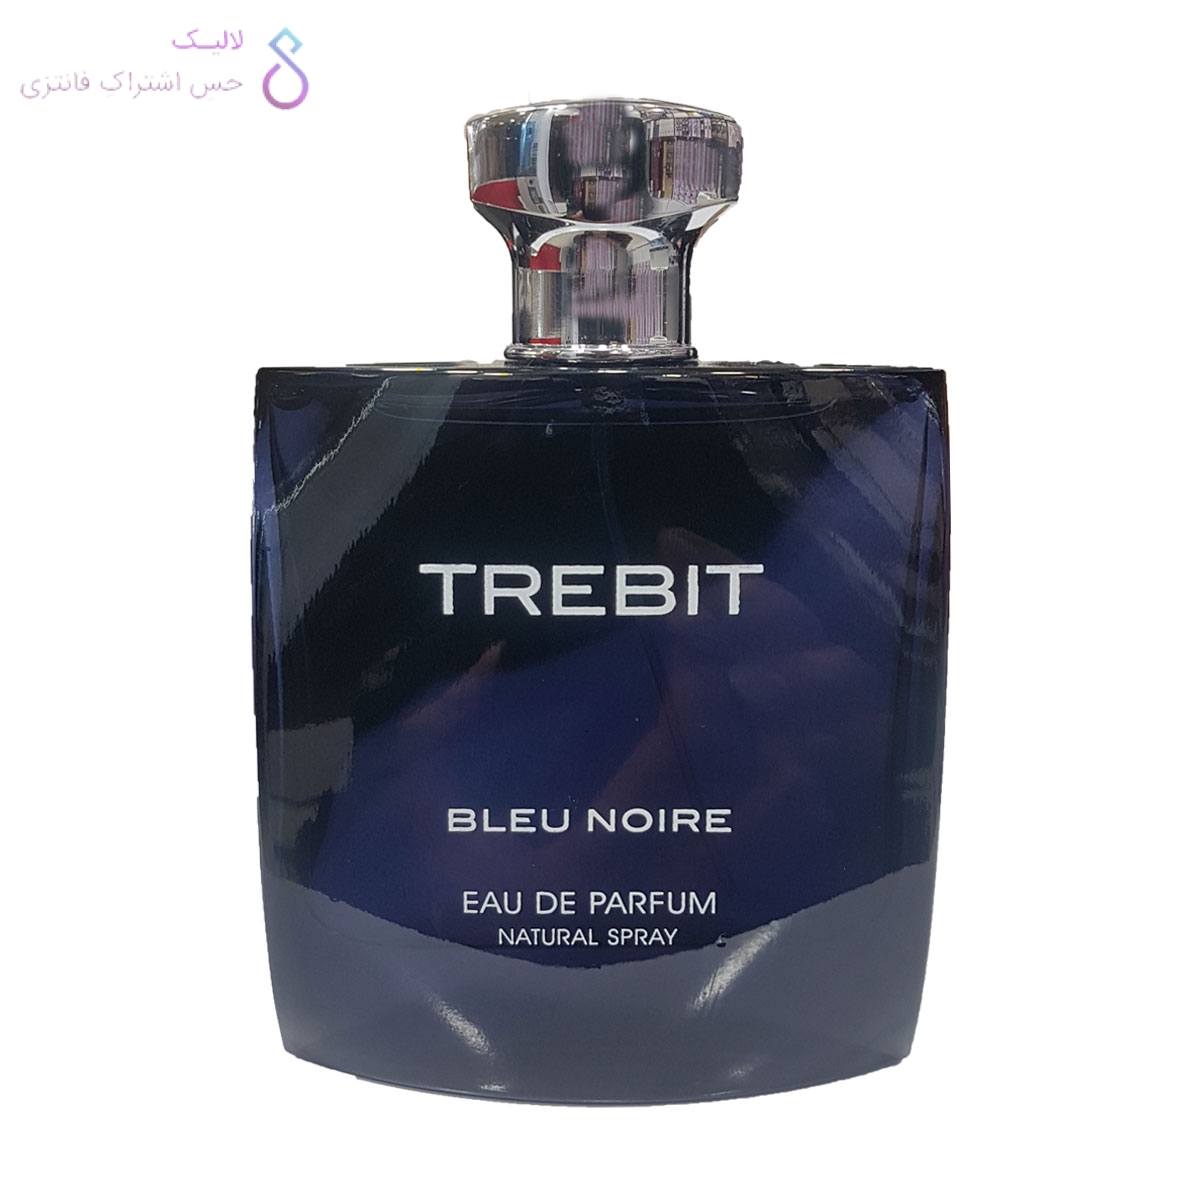 Black Leather - Men - Eau De Parfum - 100ml (3.3 Fl. oz) by Fragrance World